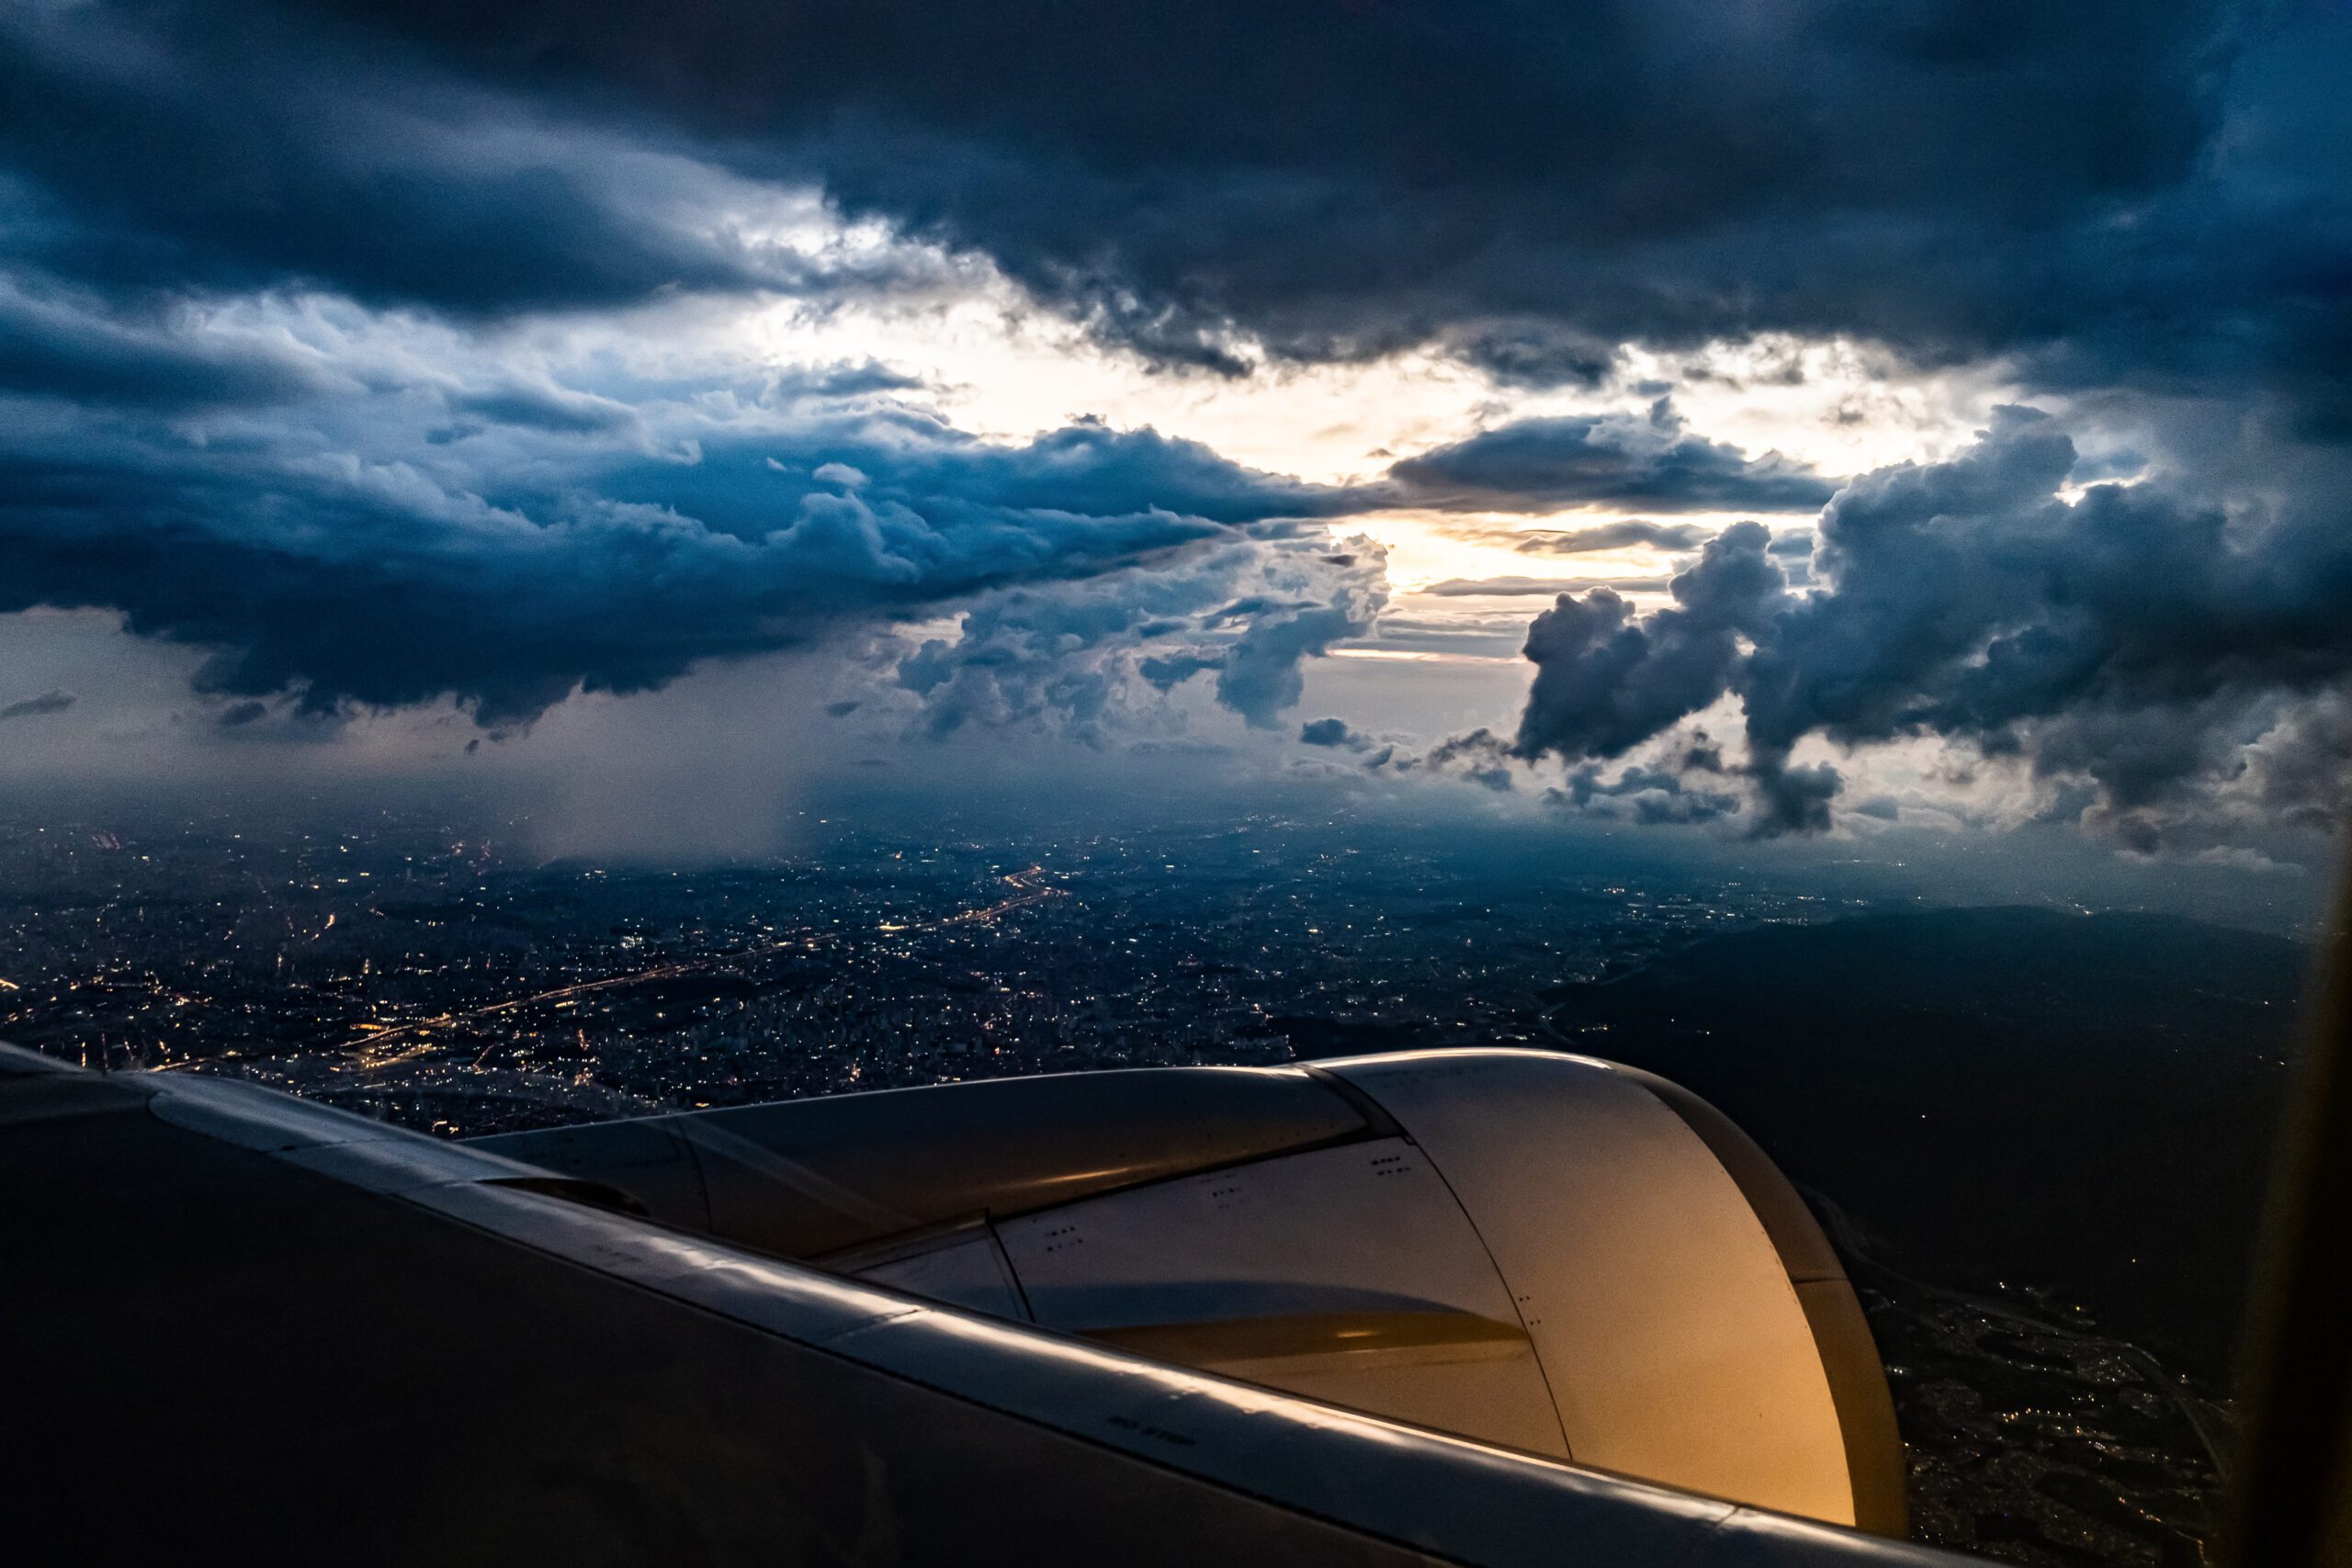 Airplane flying in stormy skies